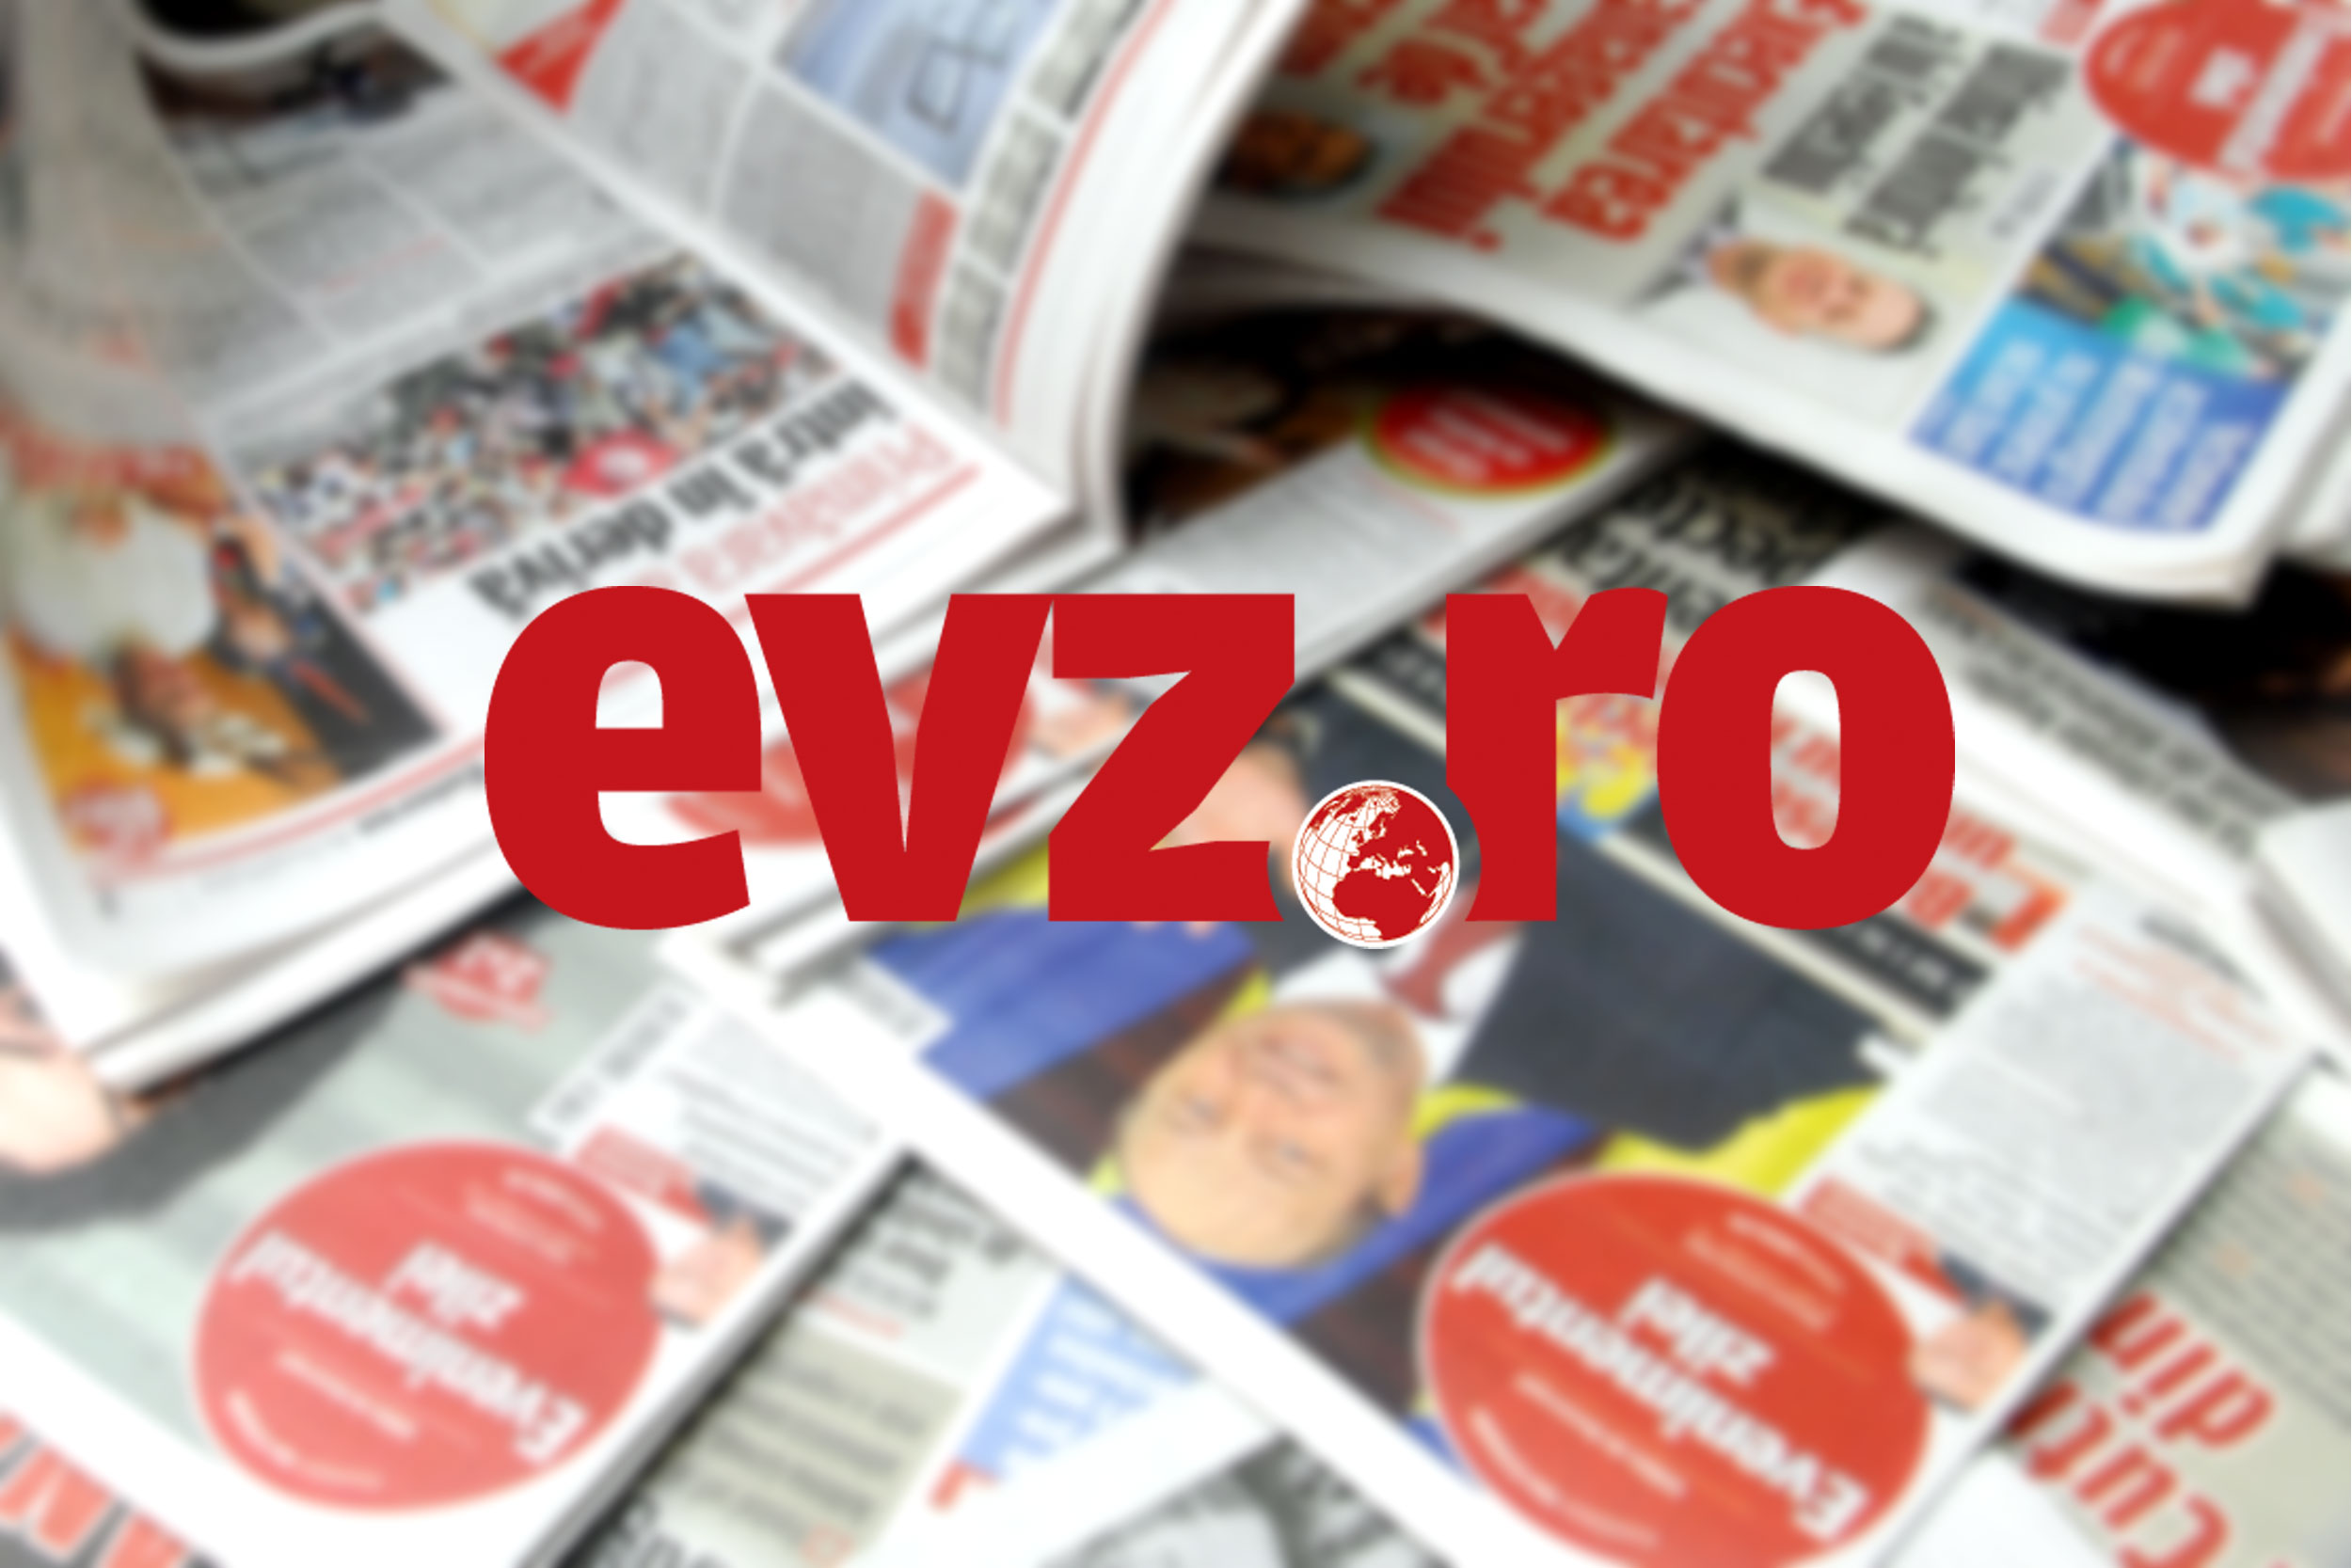 EXCLUSIV EVZ - Hemoragie parlamentară în PSD! Eugen Teodorovici ia în calcul să demisioneze din partid (surse)